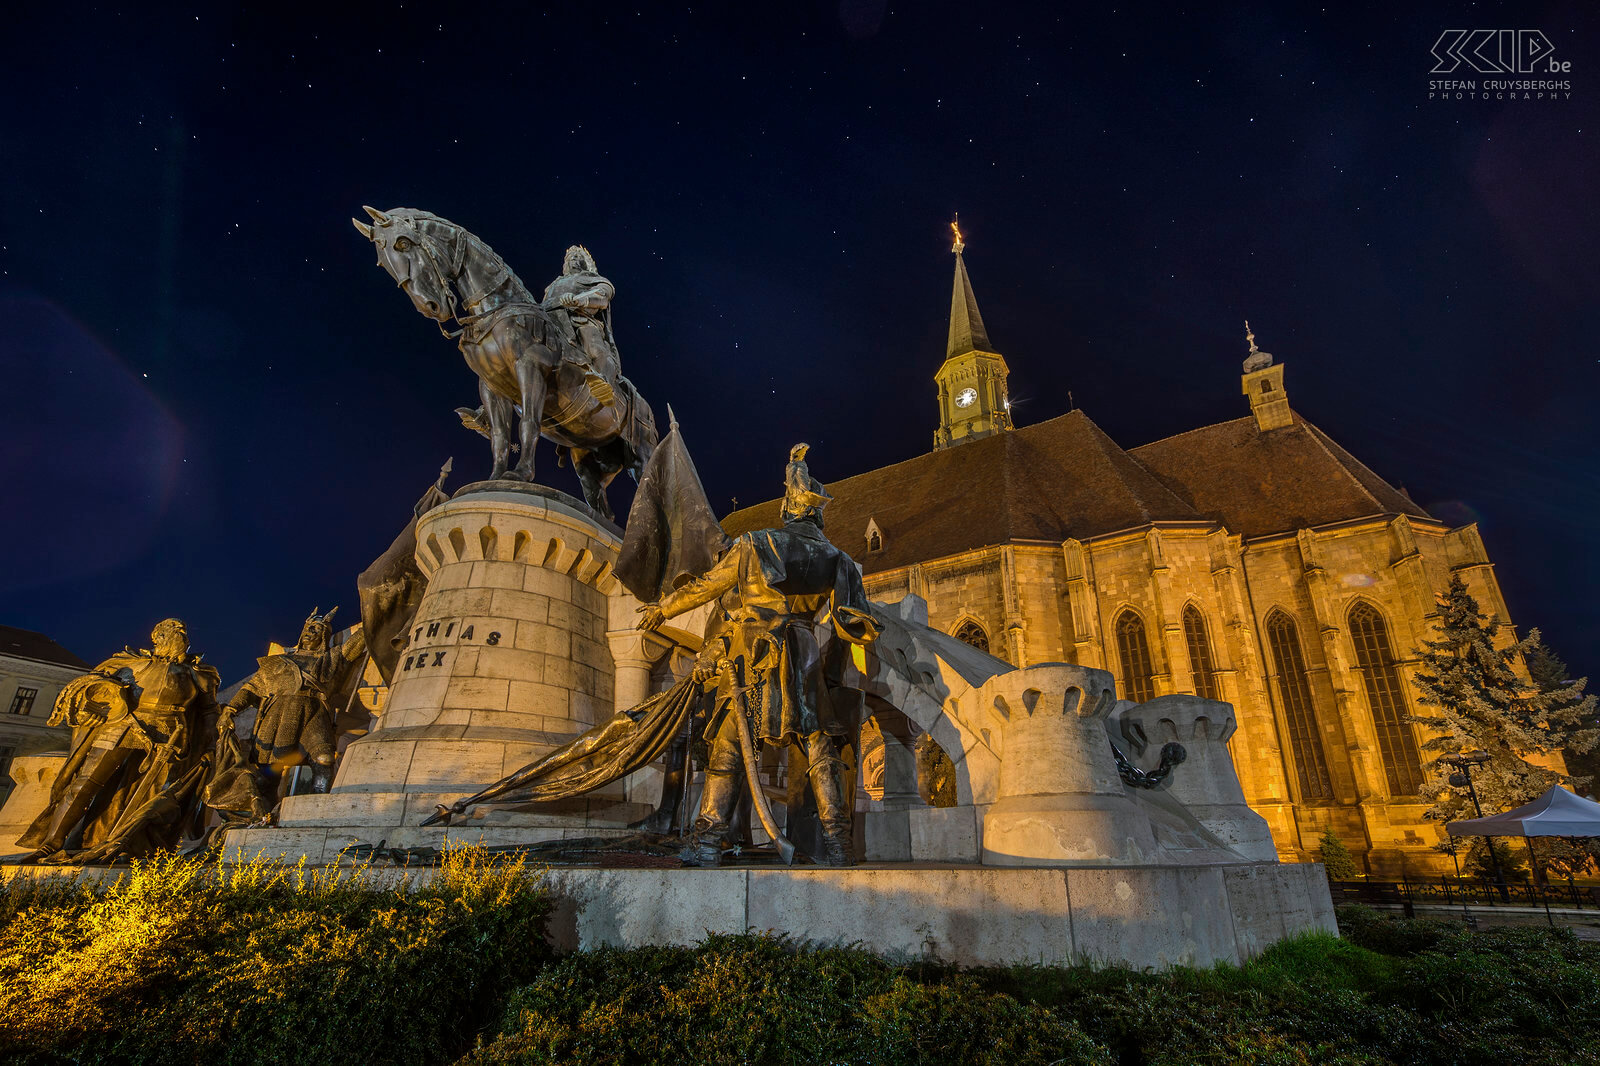 Cluj-Napoca - Monument voor Matthias Corvinus Op het plein naast de St. Michaelskerk staat het bronzen monument voor Matthias Corvinus. Matthias Corvinus was koning van Hongarije en Kroatië van 1458 tot 1490. Stefan Cruysberghs